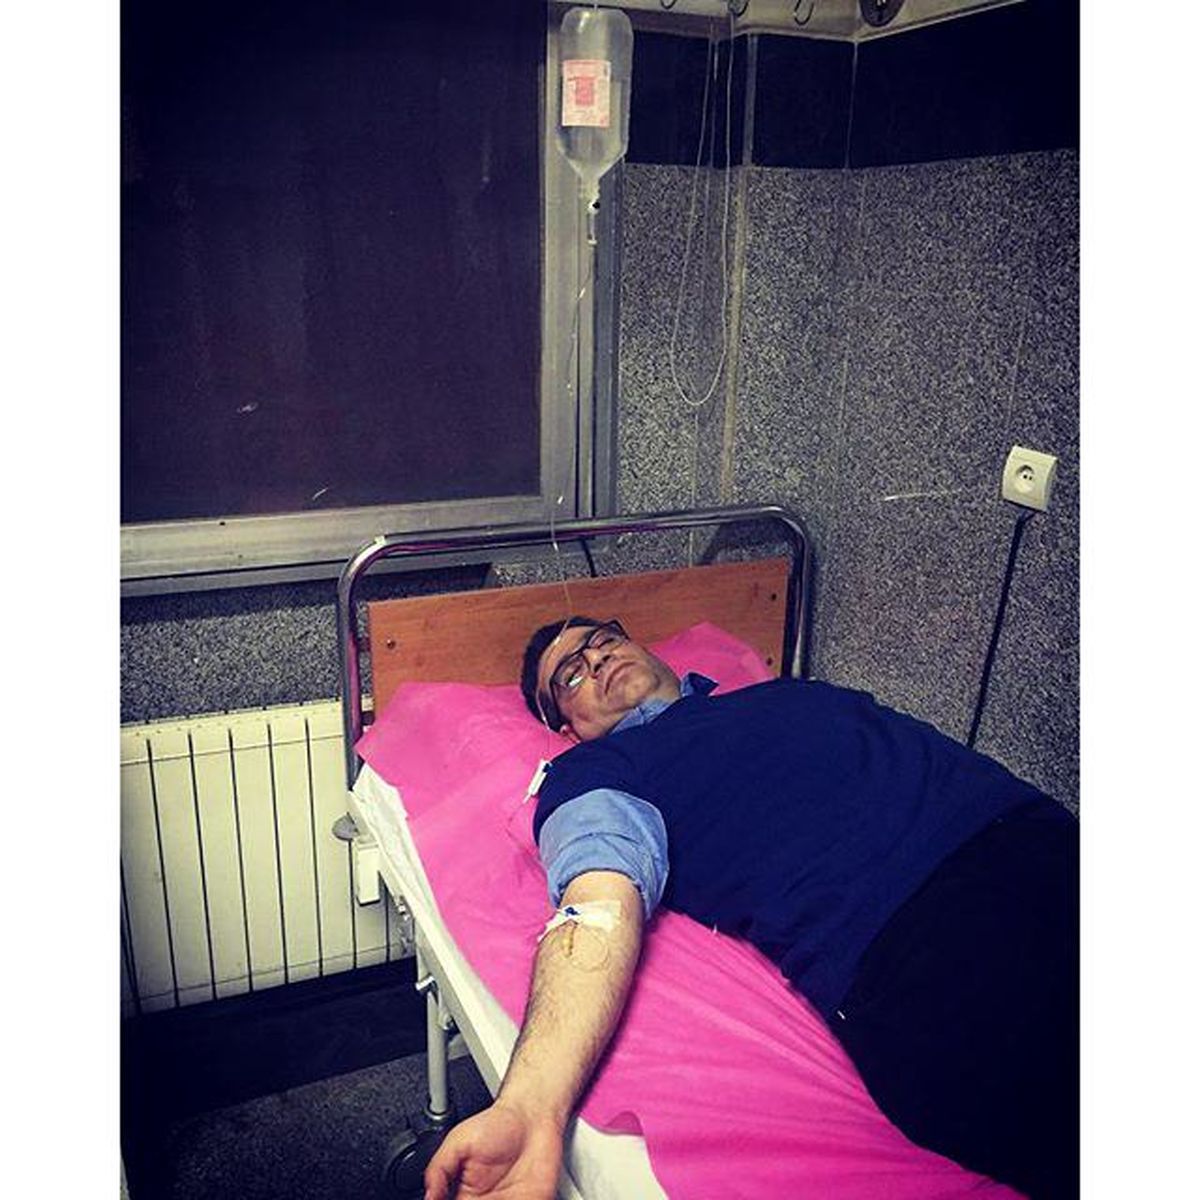 توضیحات رضا رشیدپور از بیمارستان درباره حمله عصبی در پخش زنده